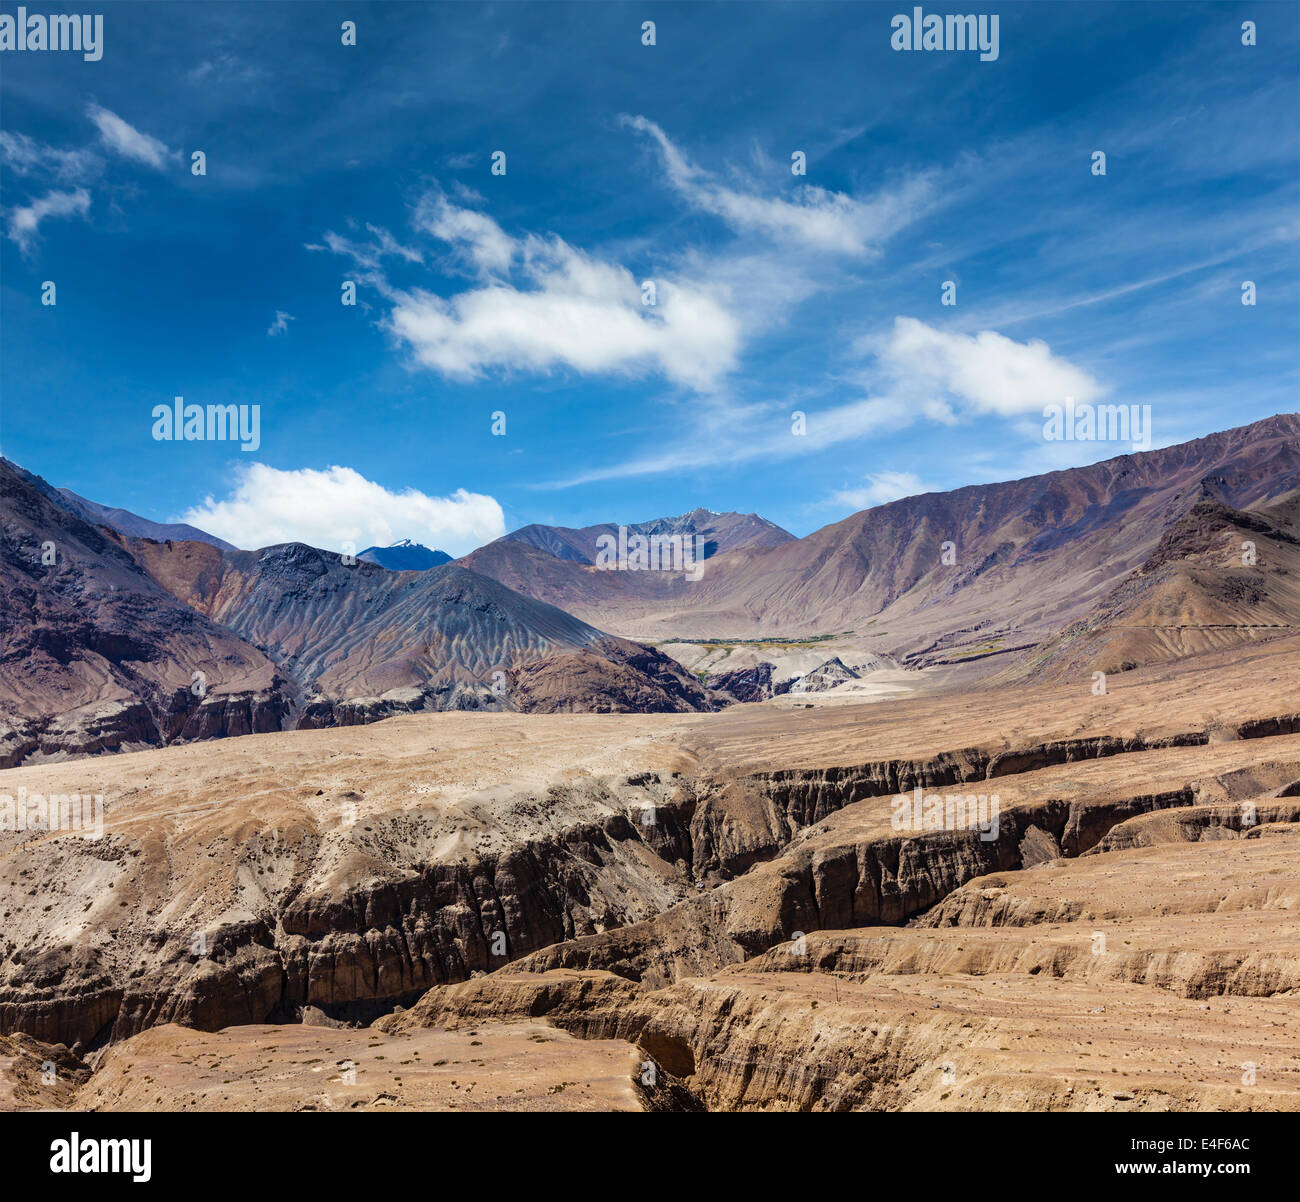 View of Himalayas near  Kardung La pass. Ladakh, India Stock Photo